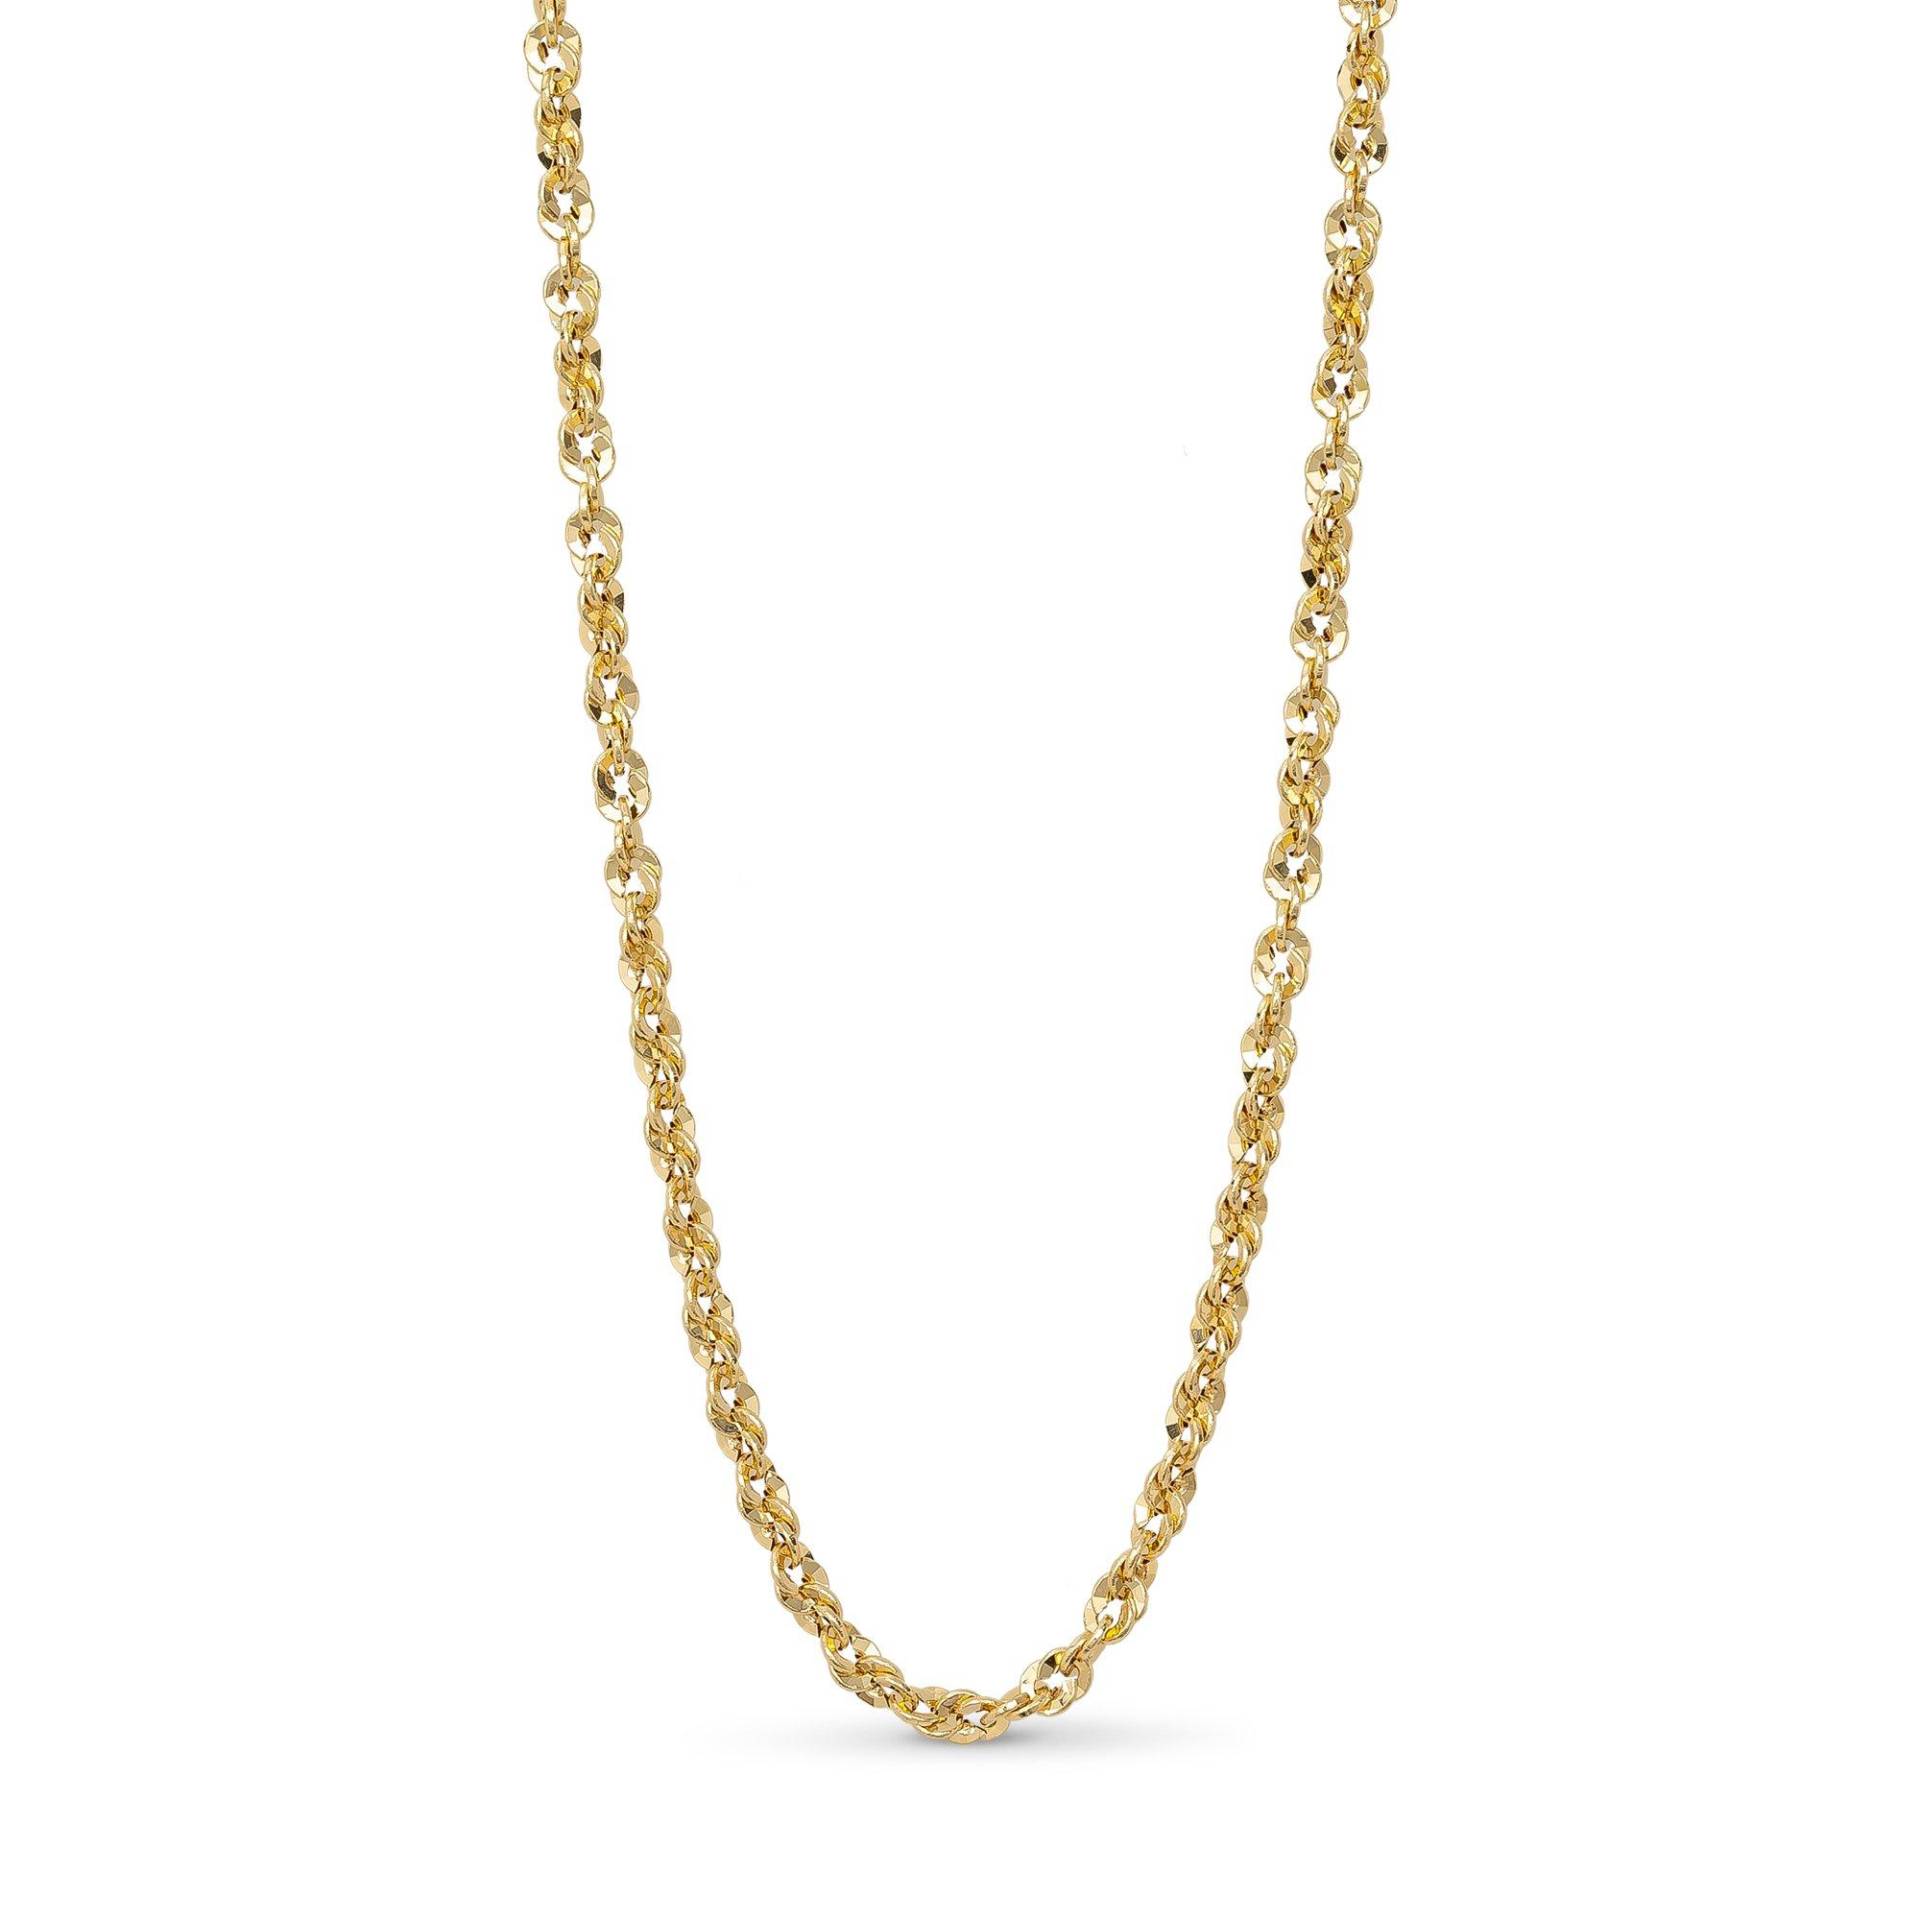 Halskette Damen Gelbgold 42cm von L' Atelier Gold 18 Karat by Manor